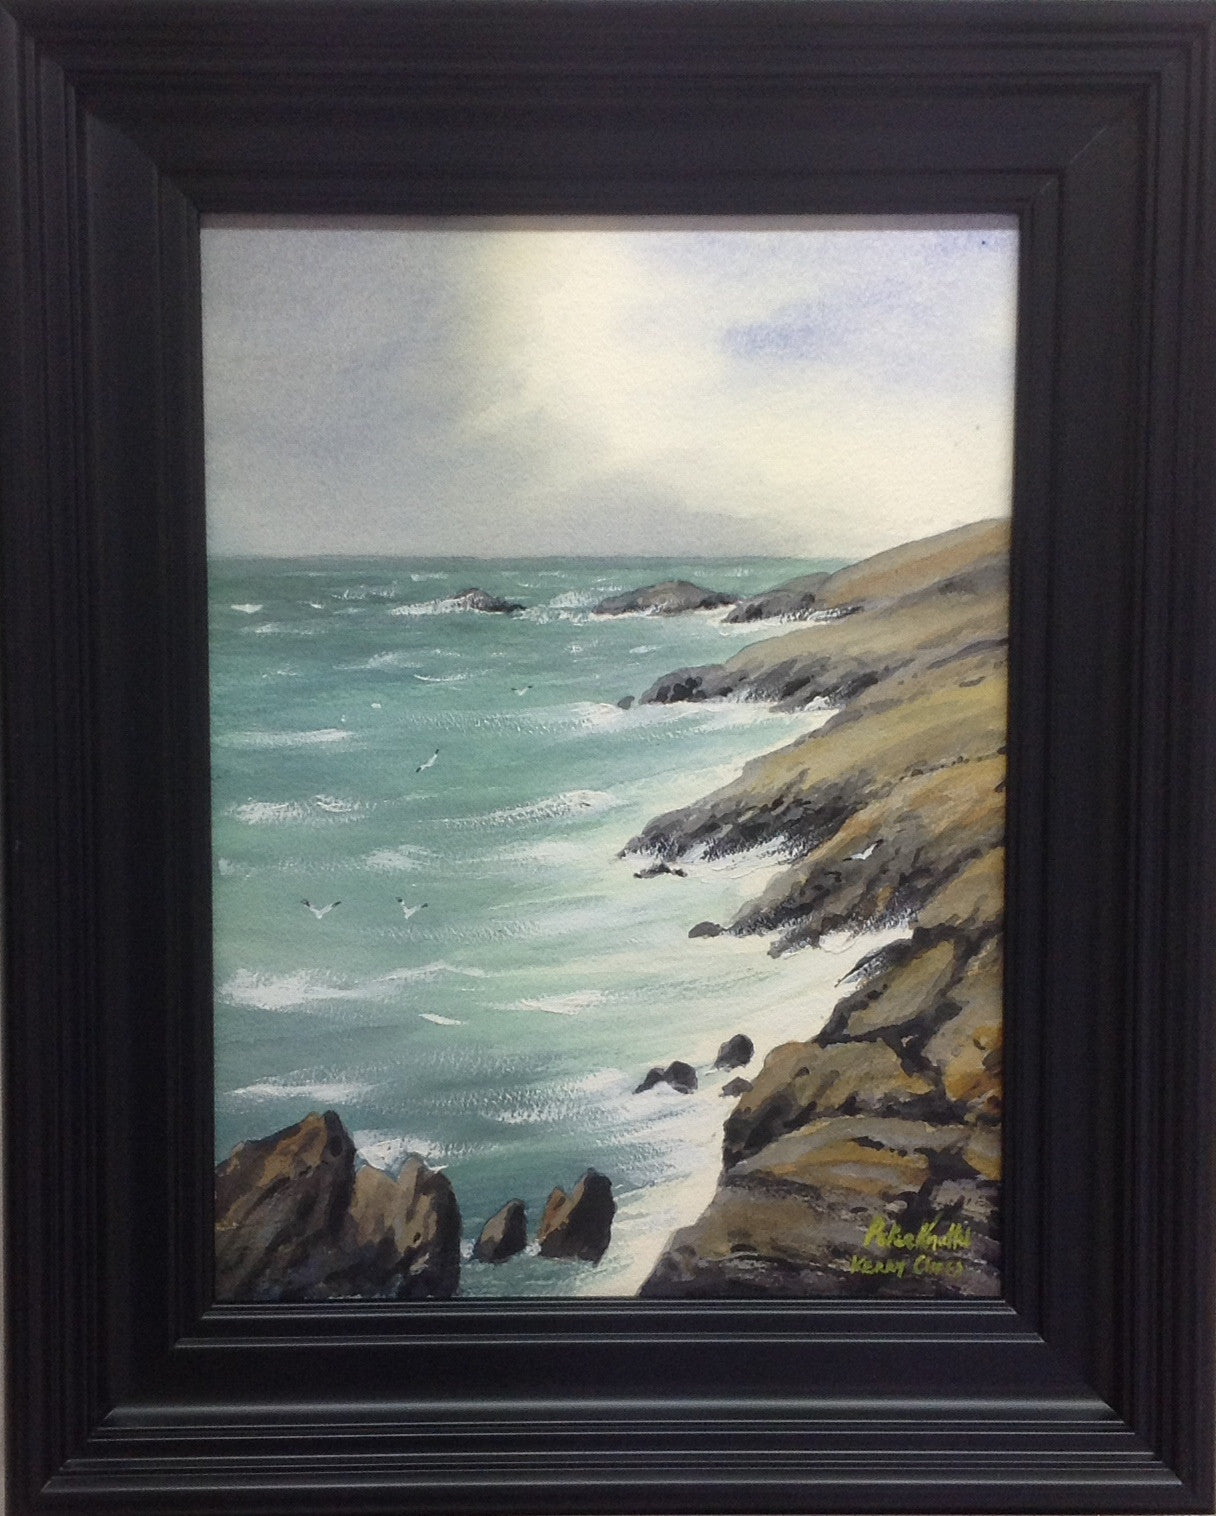 Kerry Cliffs II by Peter Knuttel - Green Gallery